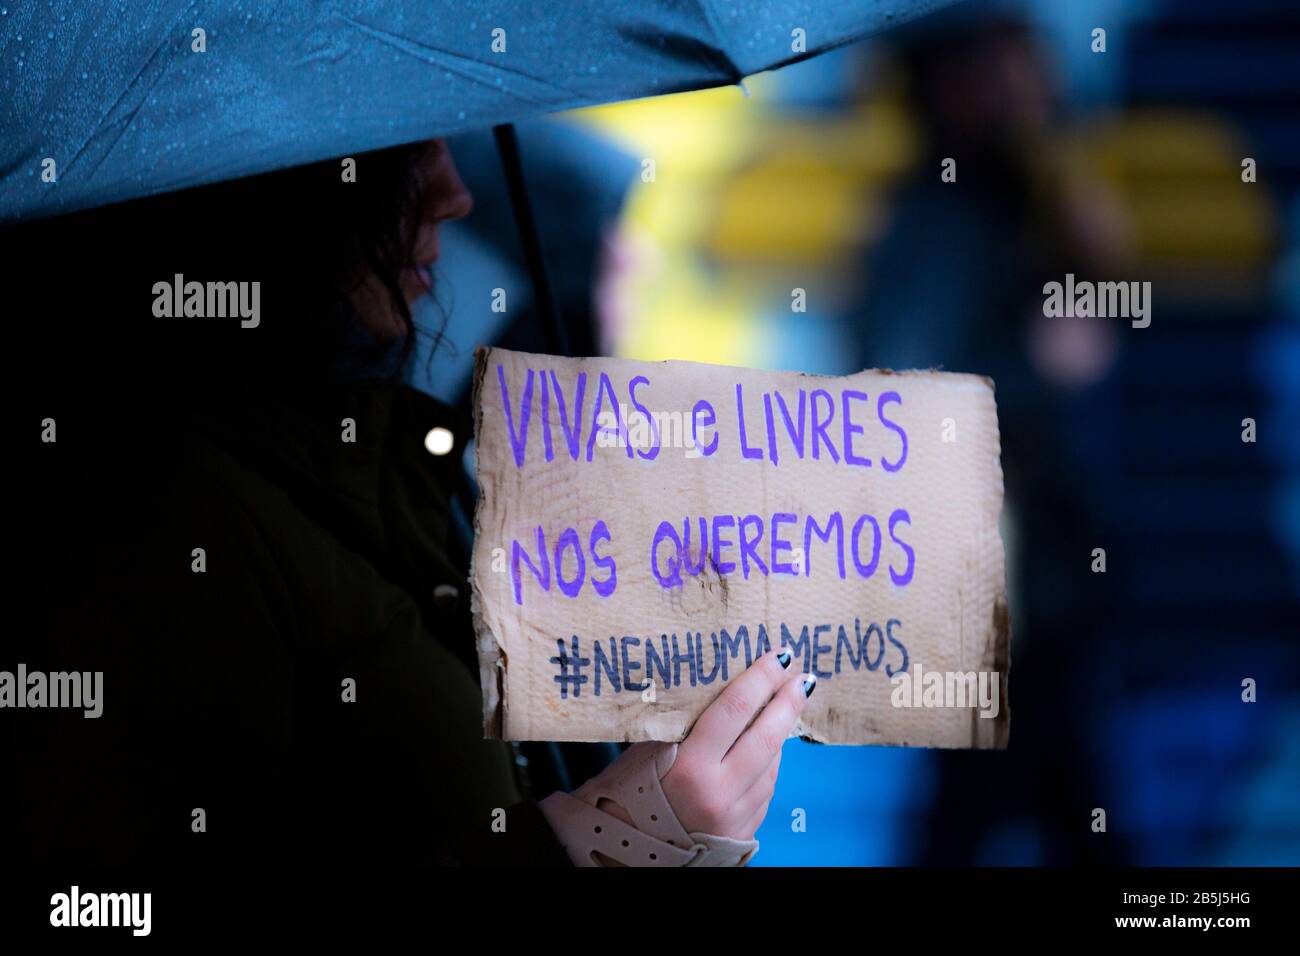 Ein Protestler, der gesehen wurde, wie er eine Plakette hielt, die sagte, dass "wir töten", hat sie am Internationalen Frauentag märz teilgenommen. Alle aournd Portugal Tausende von Menschen marschieren aus Protest gegen Ungleichheit, Diskriminierung und Gewalt in die wichtigsten Städte und fordern Veränderungen. Stockfoto